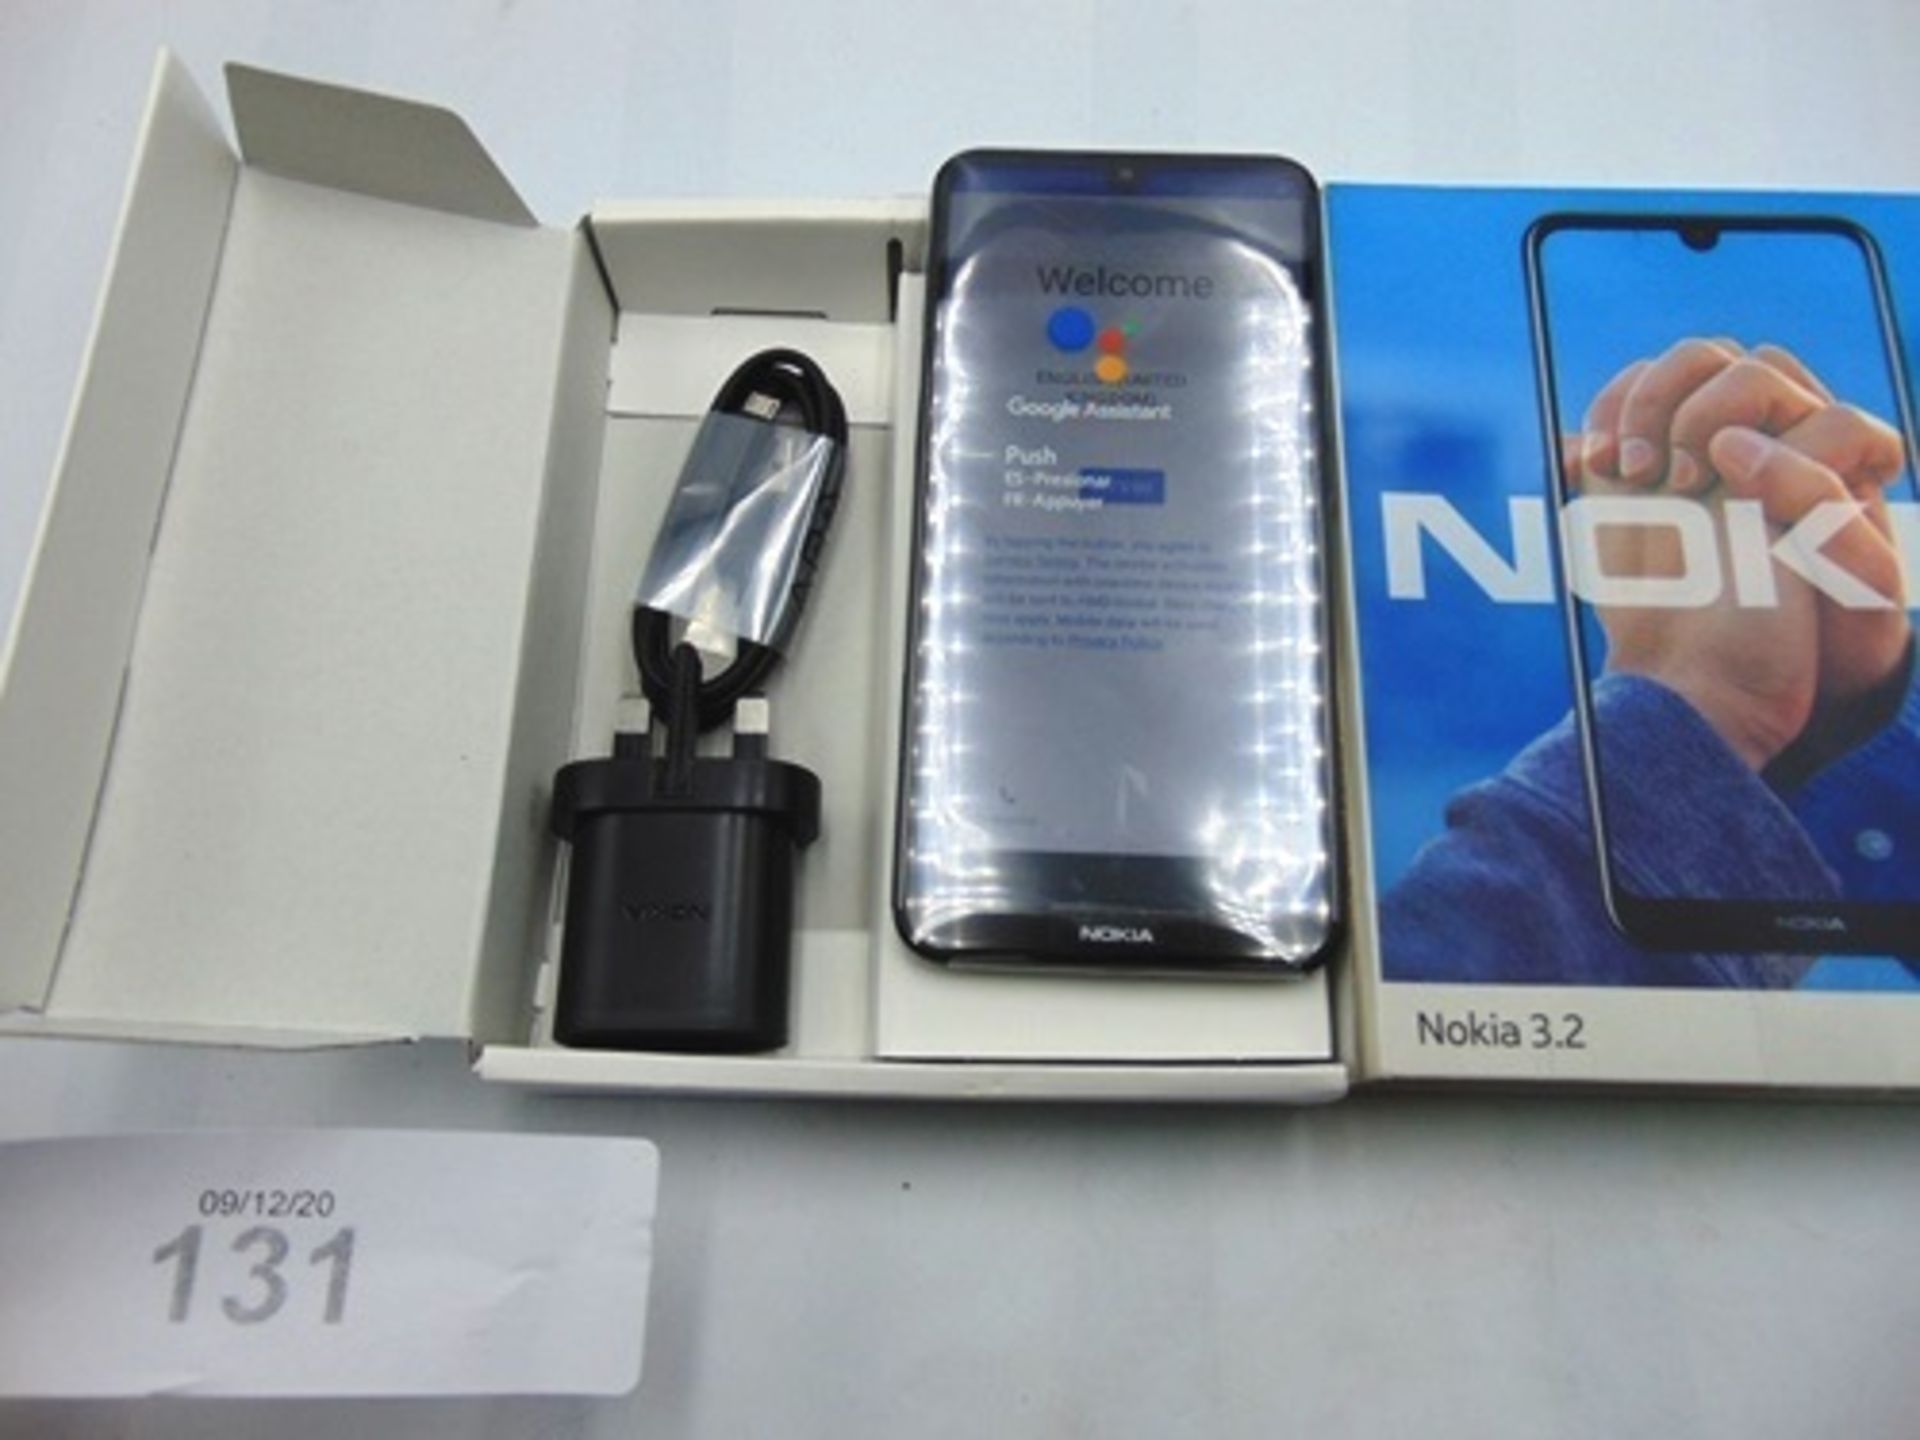 A black Nokia 3.2 smartphone, model TA-1156DS, 16gb, IMEI: 352907103166740 - New in box, box open.